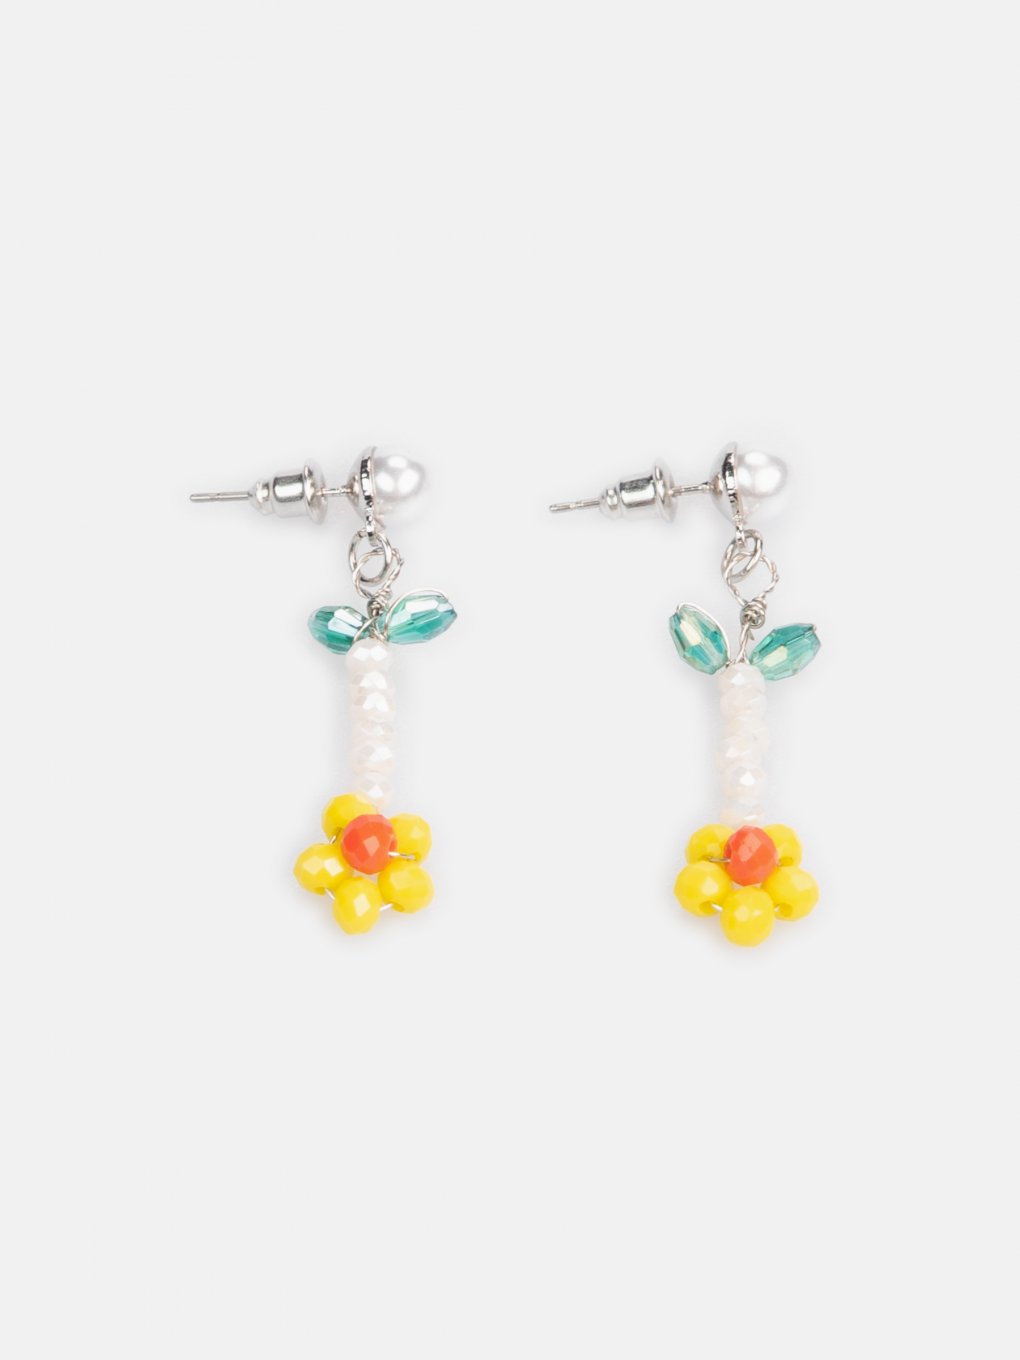 Beaded flower earrings